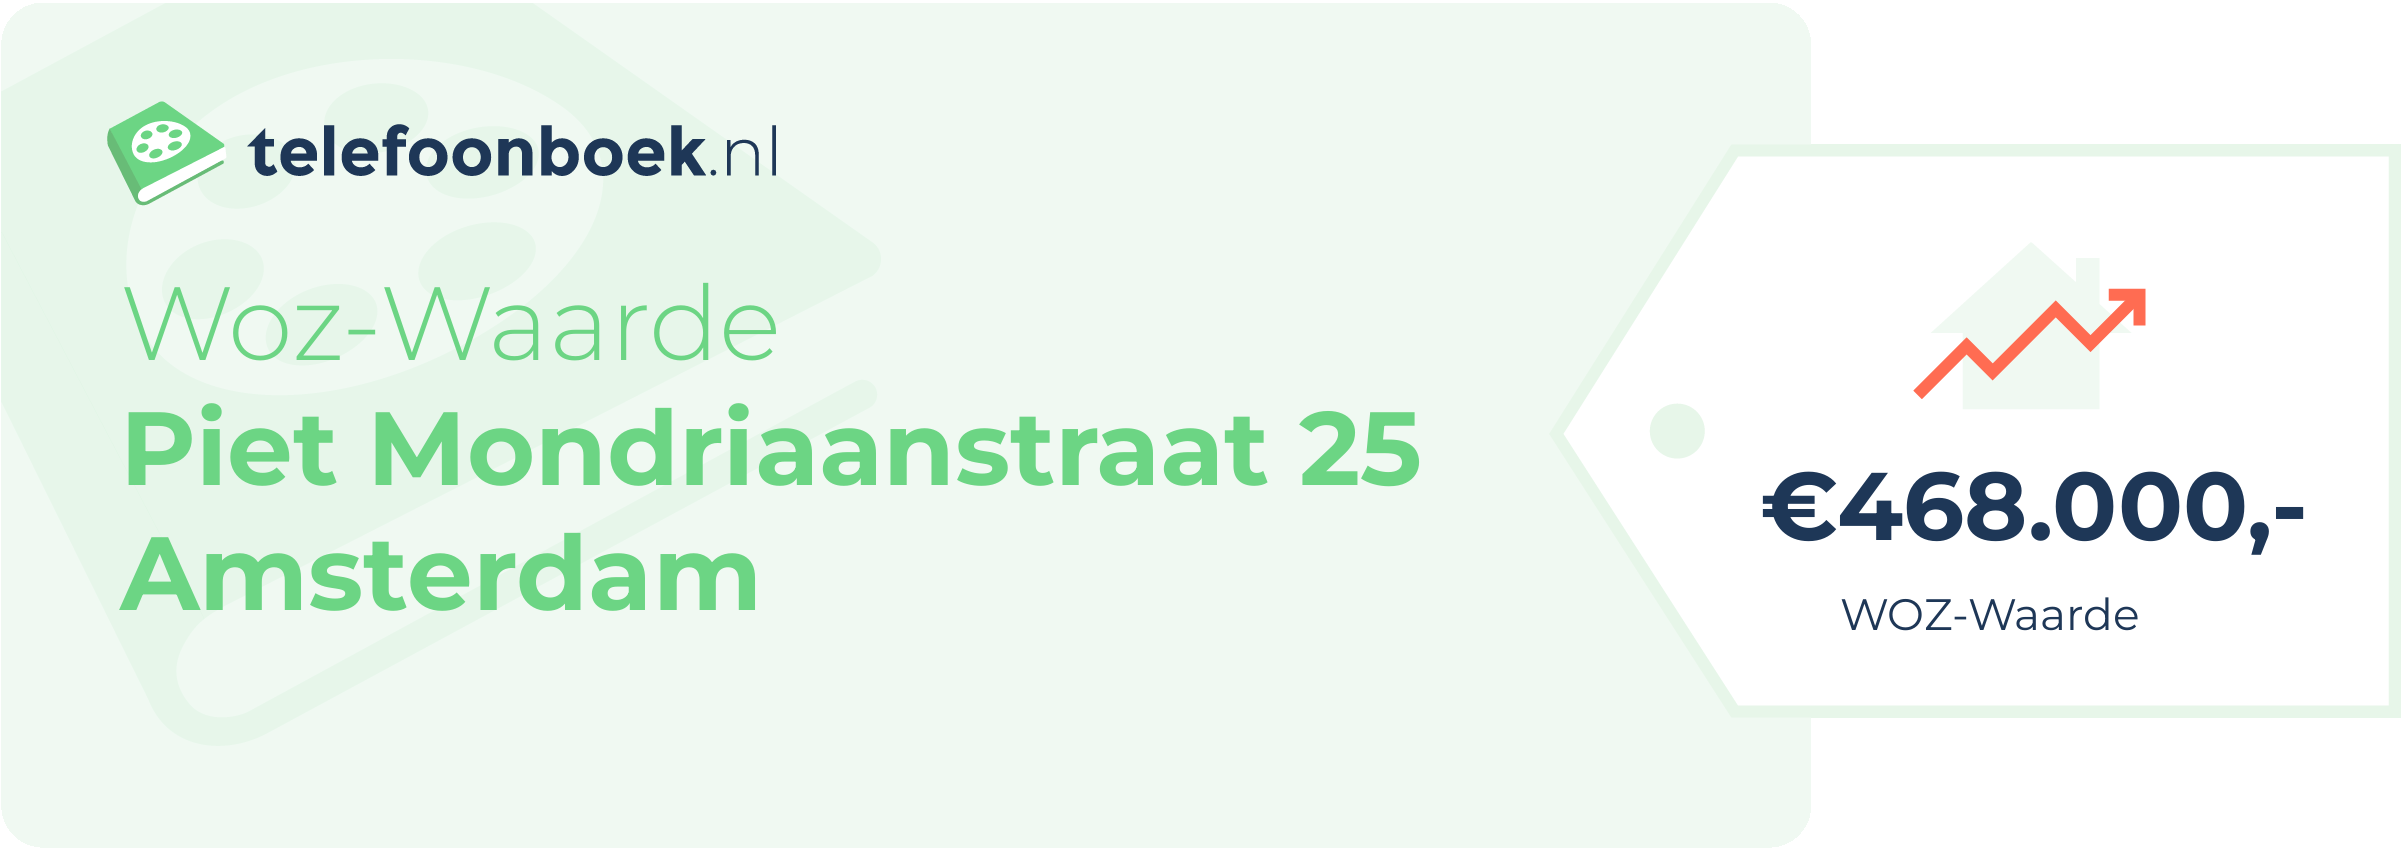 WOZ-waarde Piet Mondriaanstraat 25 Amsterdam